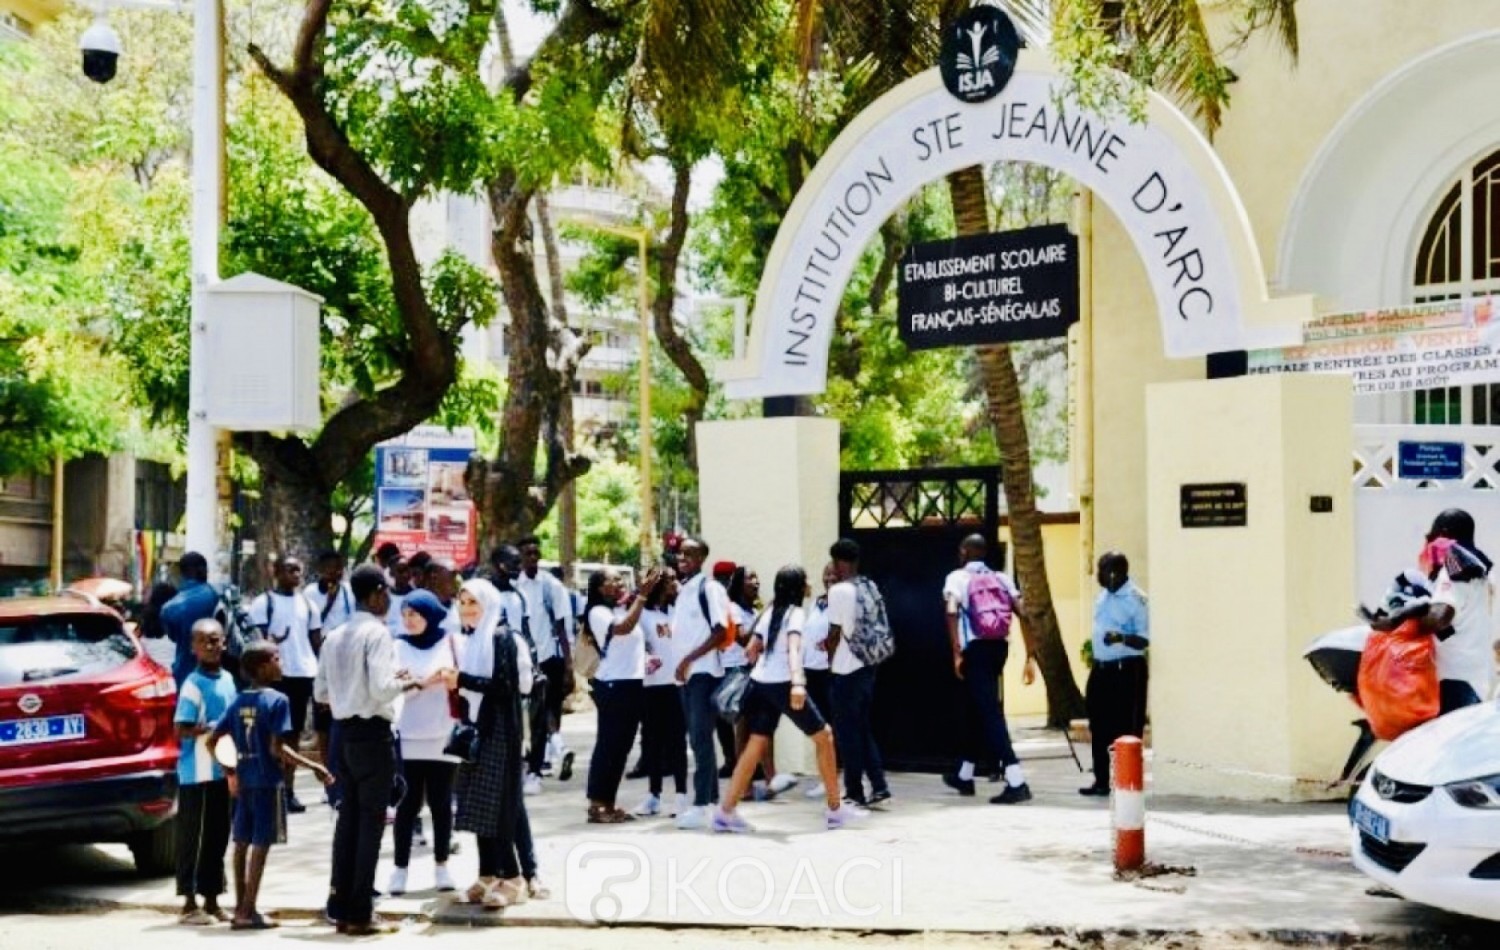 Sénégal: Interdiction du voile à Sainte Jeanne d'Arc, l'école revient sur sa décision